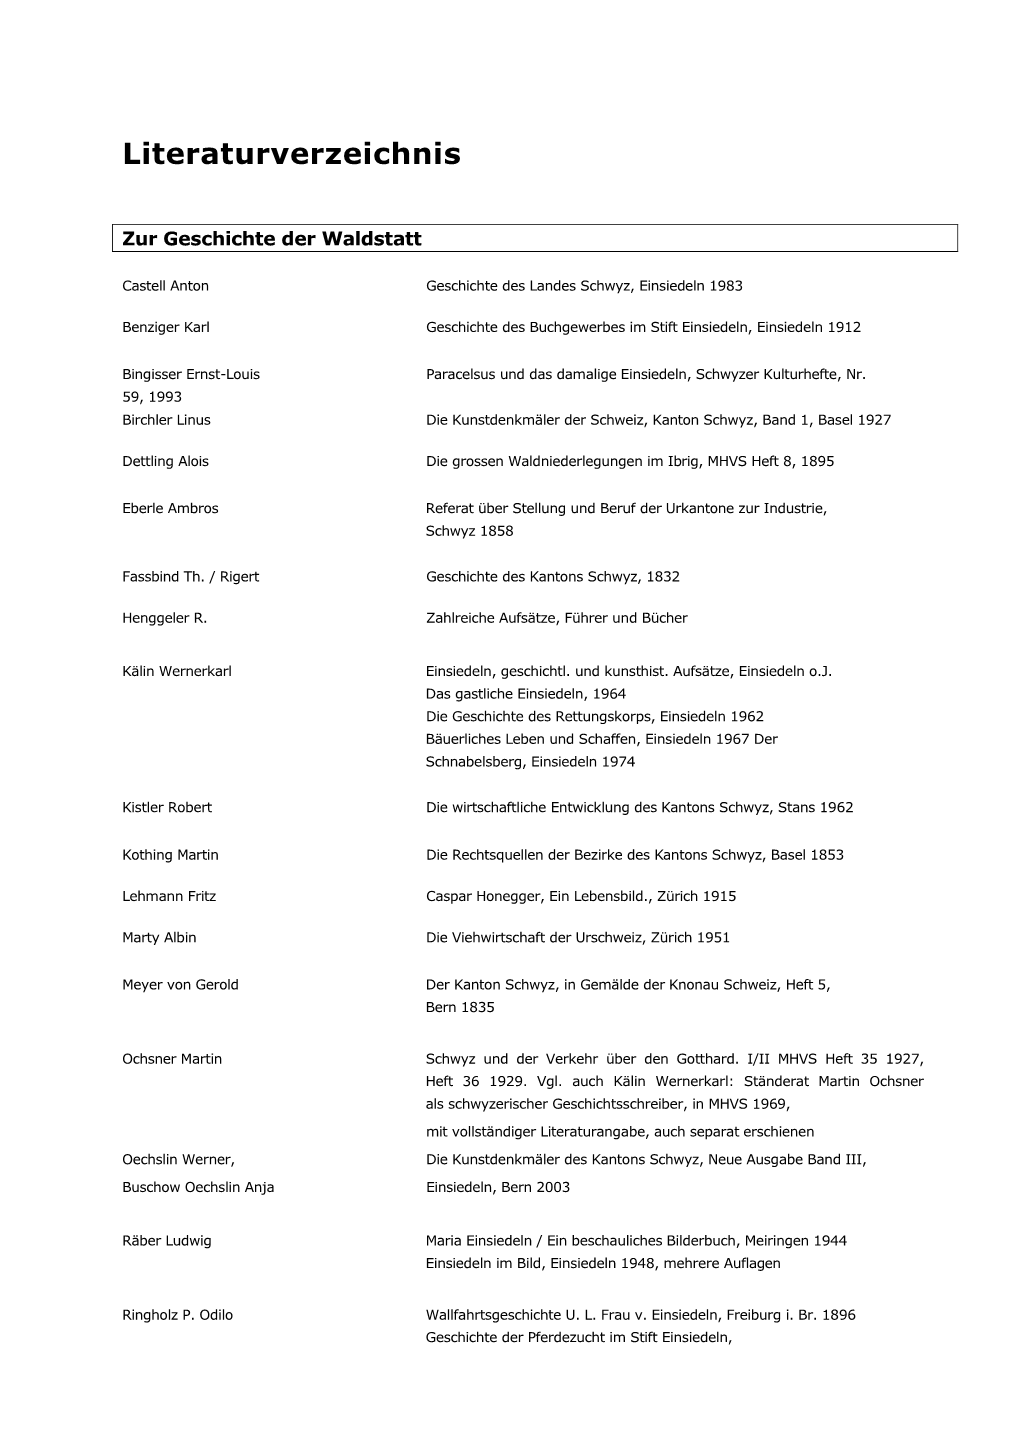 Literaturverzeichnis Waldstatt Einsiedelnx